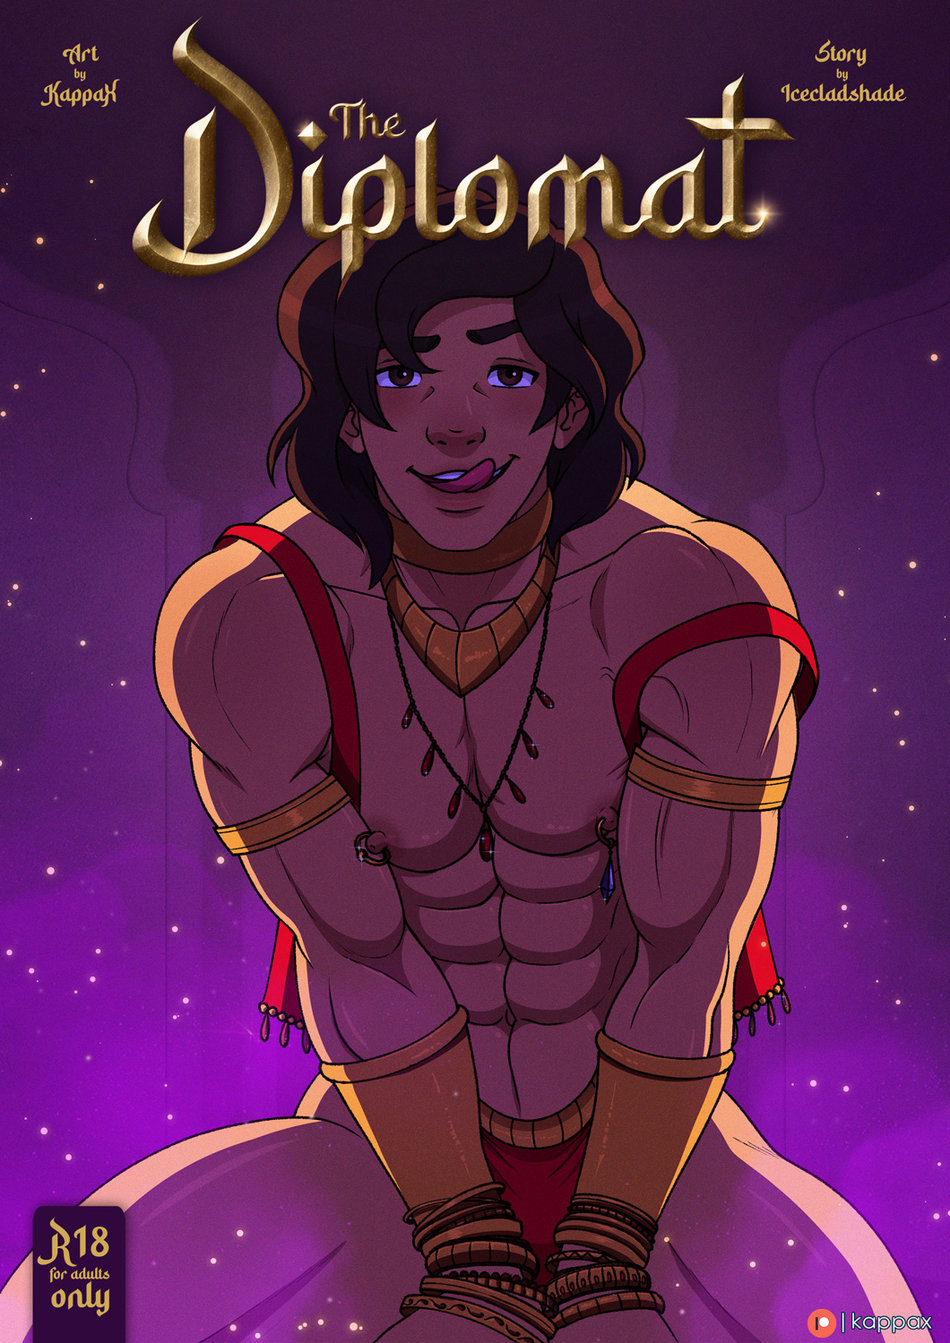 KappaX Art Disney The Diplomat Jasmine, Rajah, Hercules, Pegasus x Aladdin